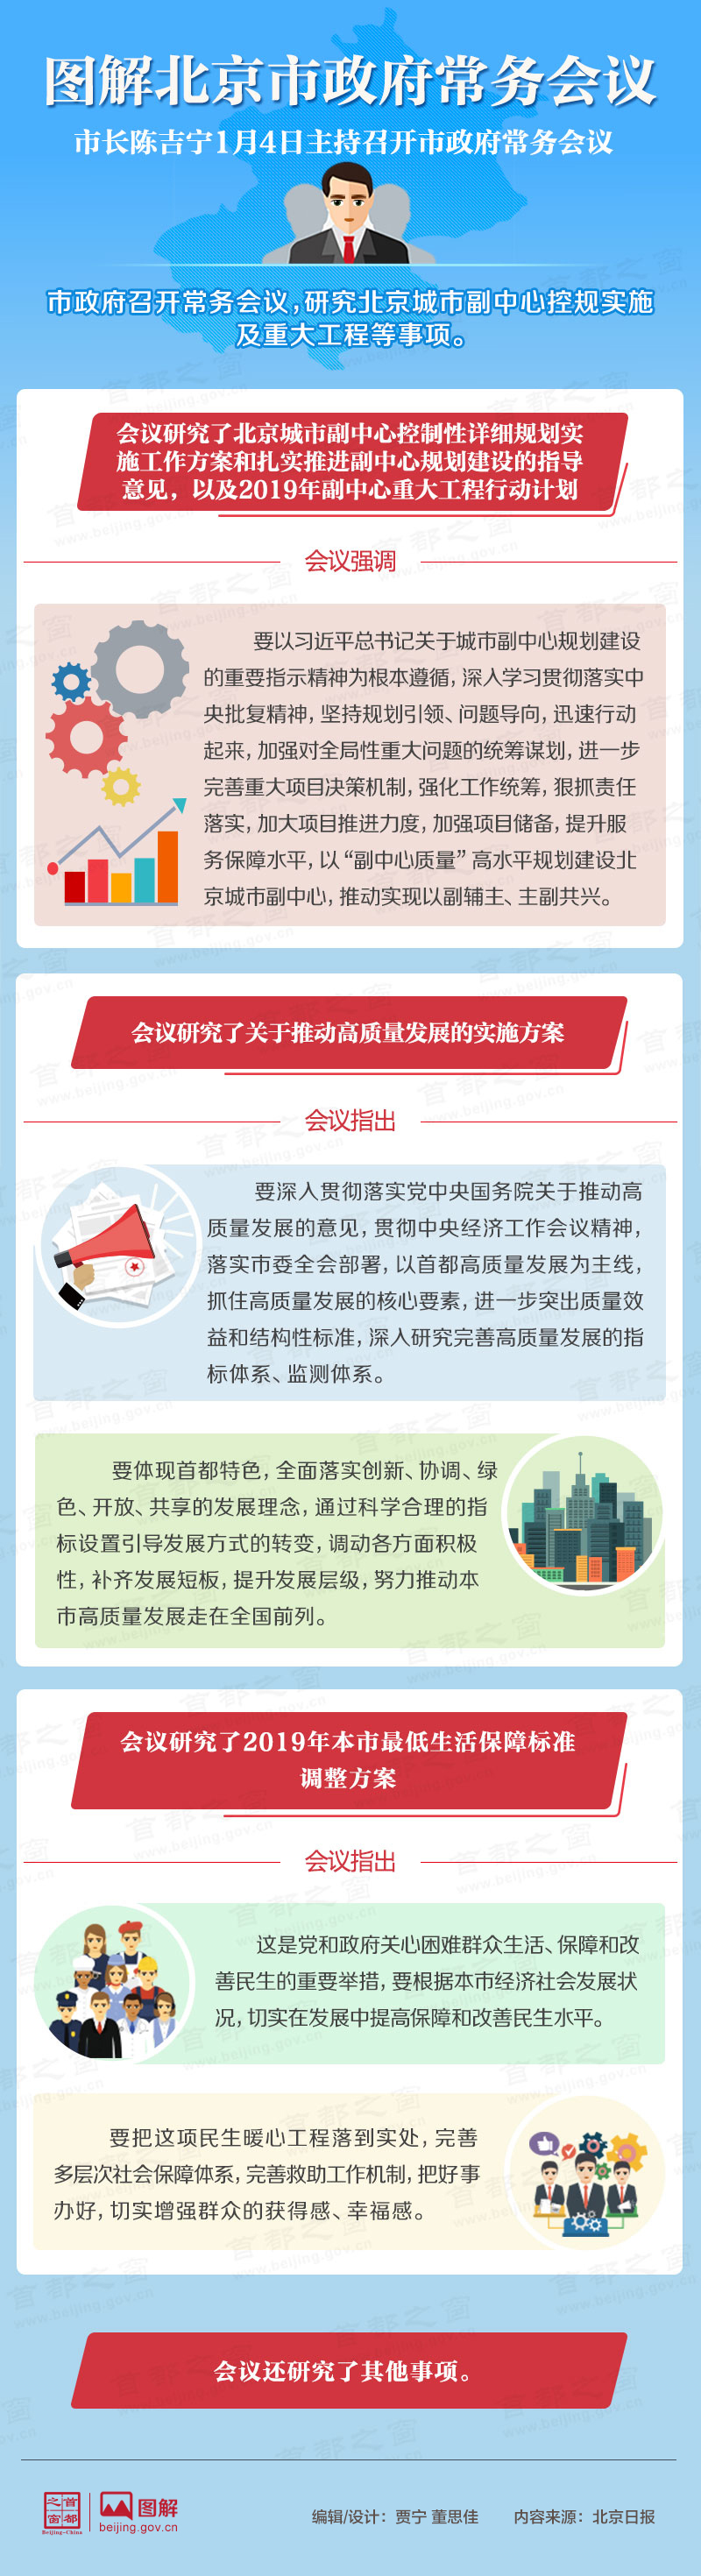 圖解2019年1月4日北京市政府常務會議